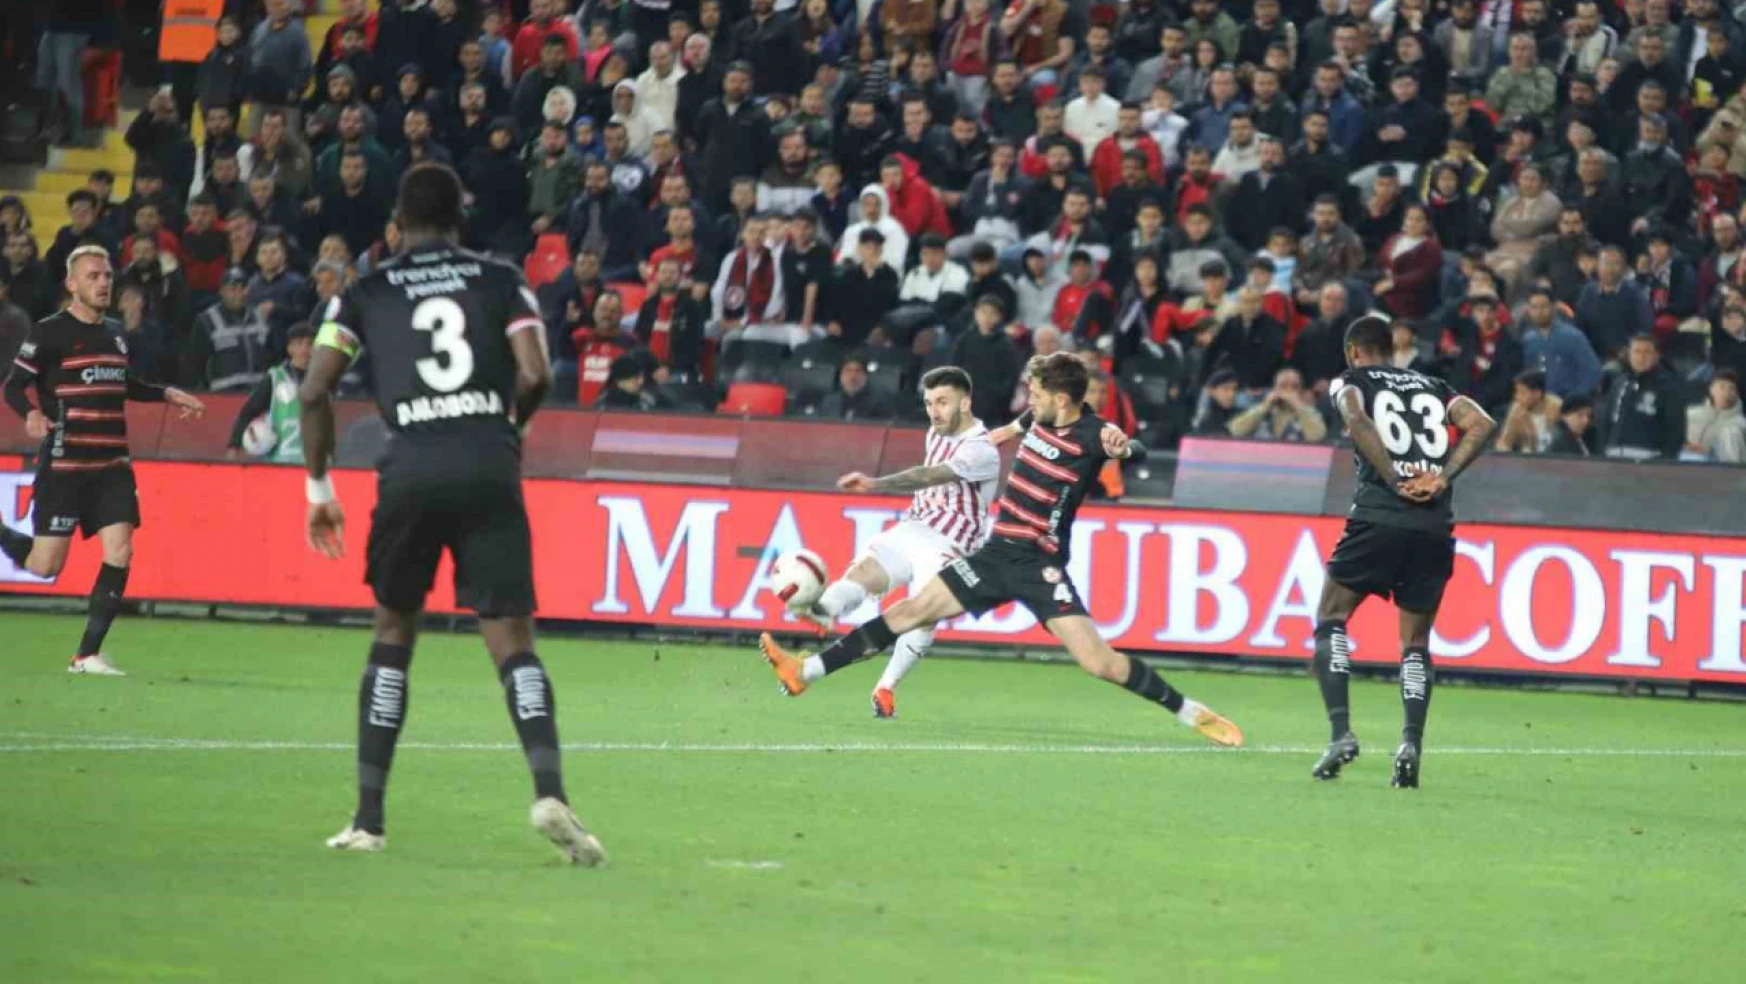 Trendyol Süper Lig: Gaziantep FK: 1 - Hatayspor: 1 (Maç sonucu)